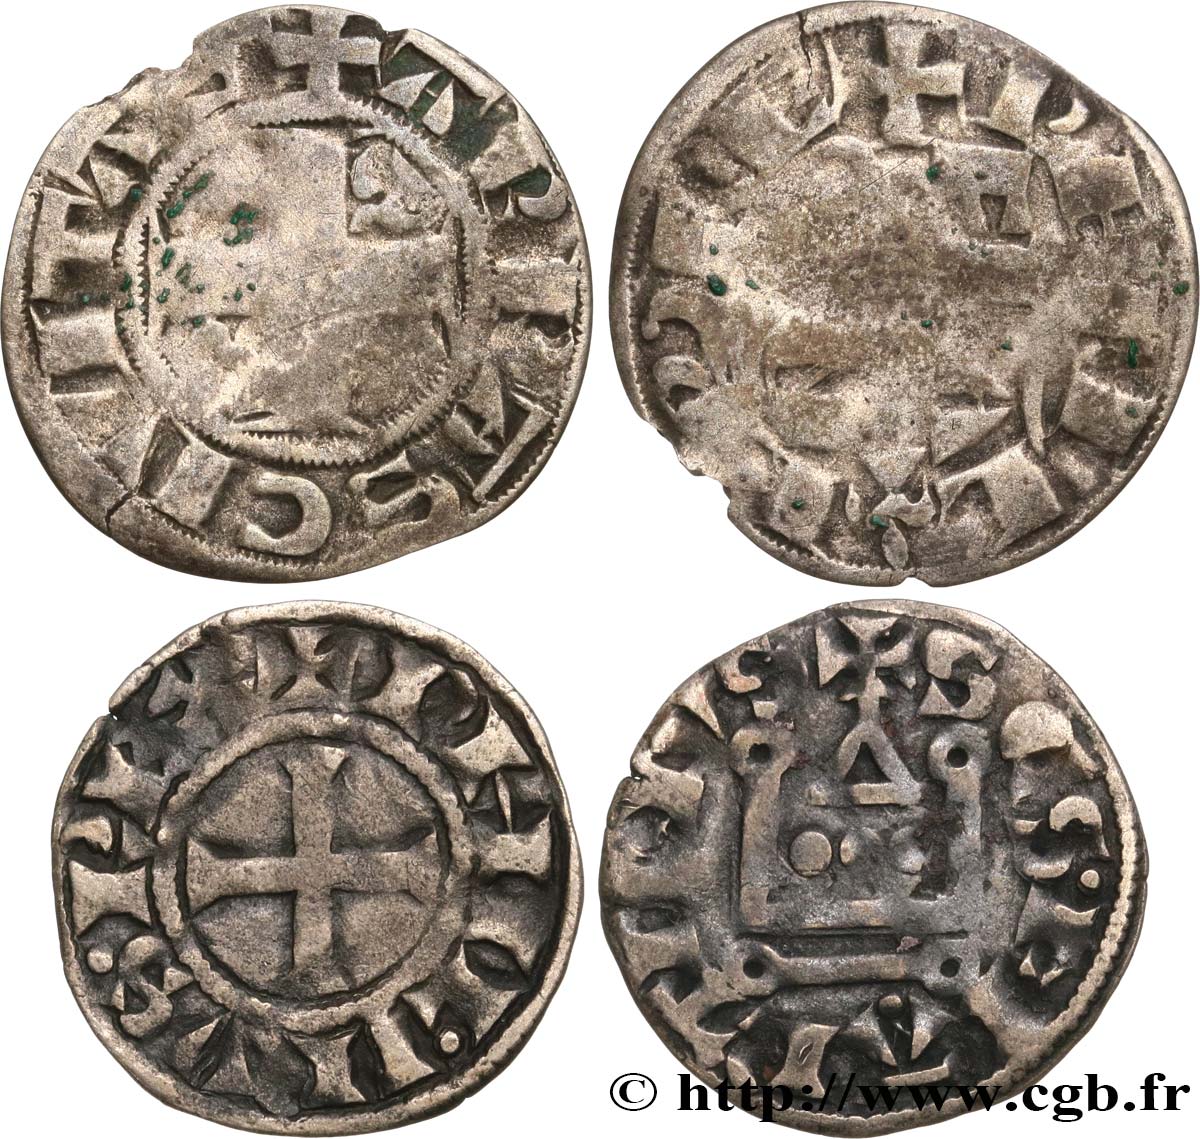 FILIPPO II  AUGUSTUS  Lot de deux monnaies royales n.d. Ateliers divers MB